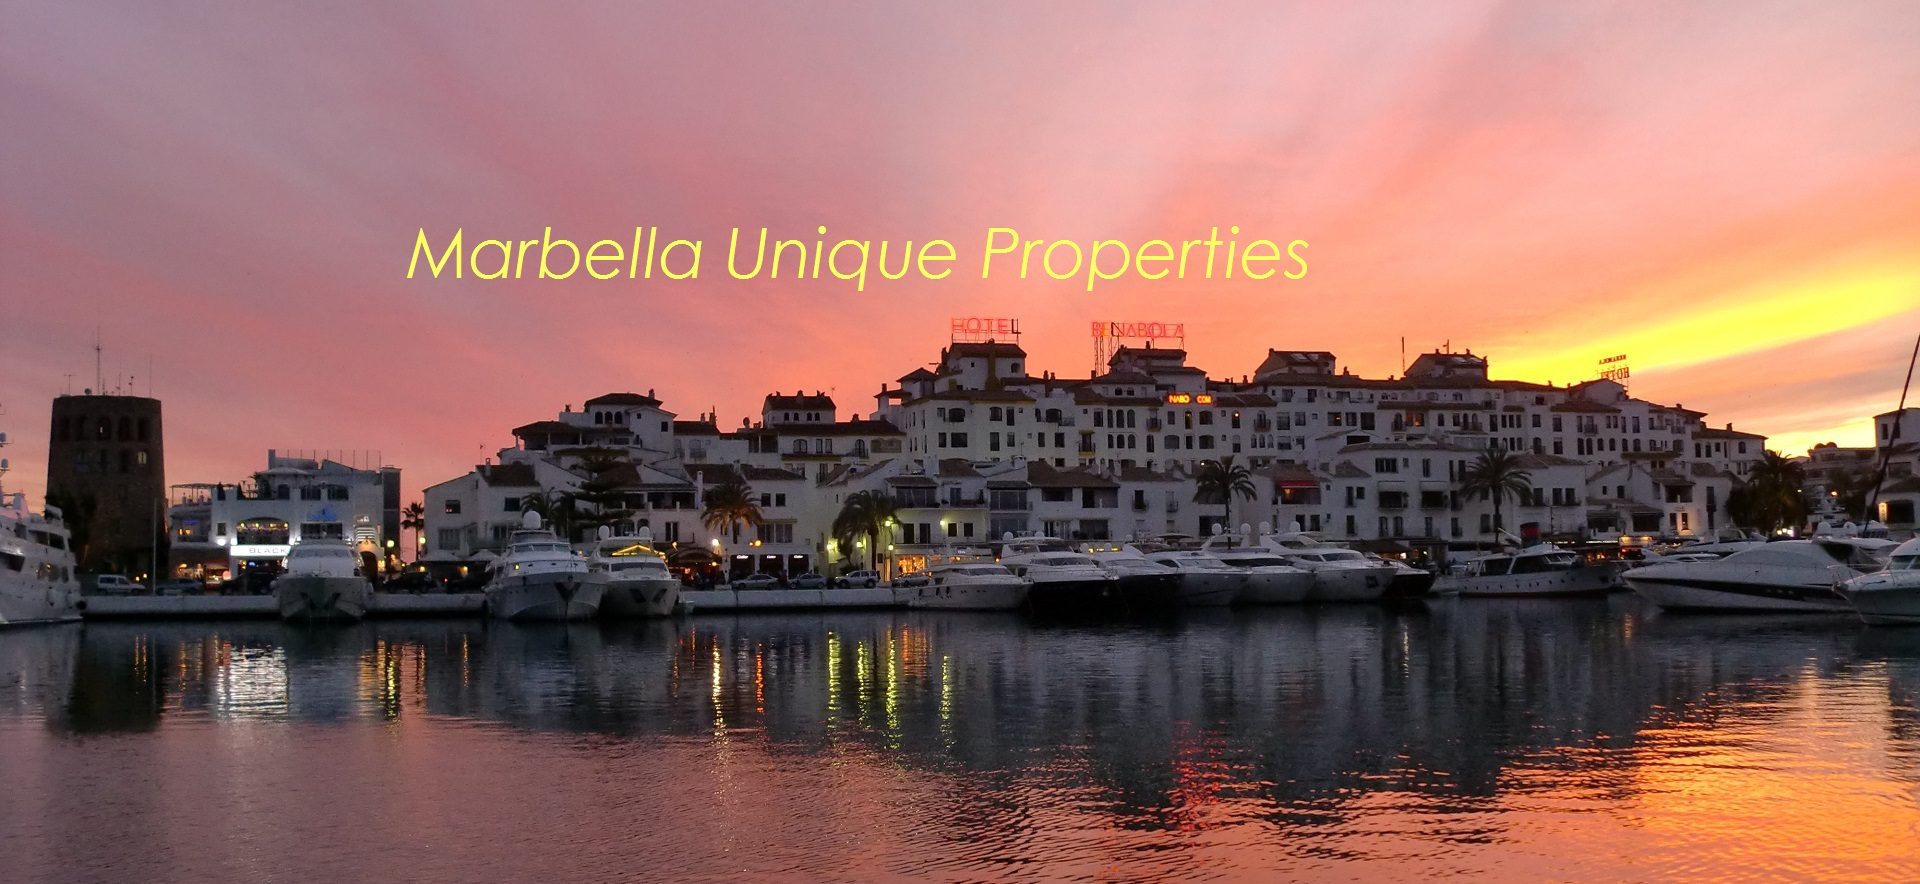 Puerto José Banús - Inmobiliaria Marbella Unique Properties - Ventas y Alquileres